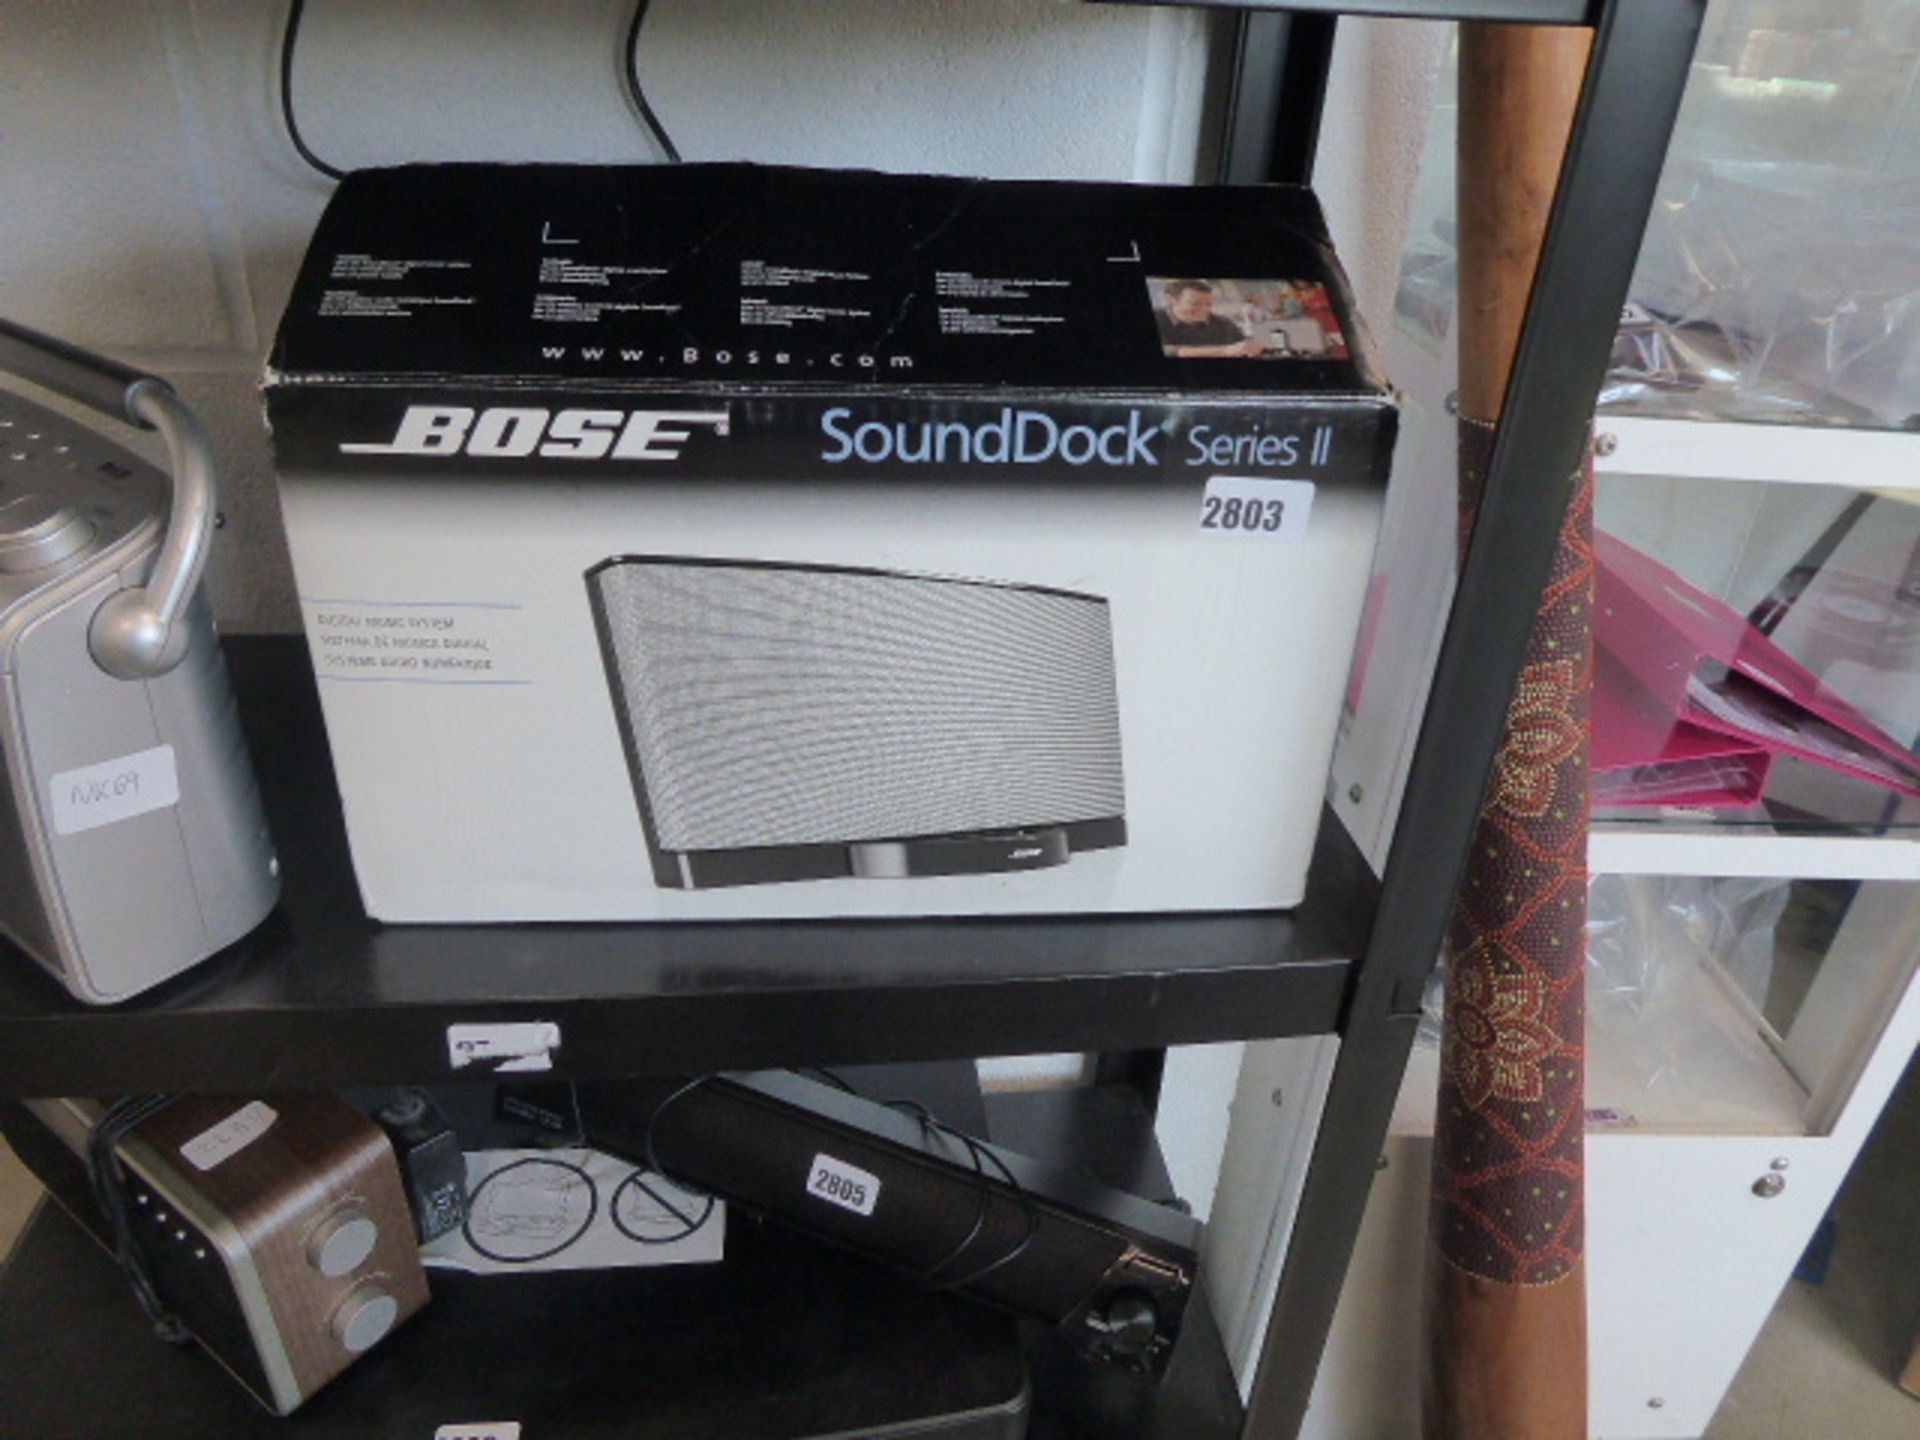 Bowes soundbook series 2 speaker in box